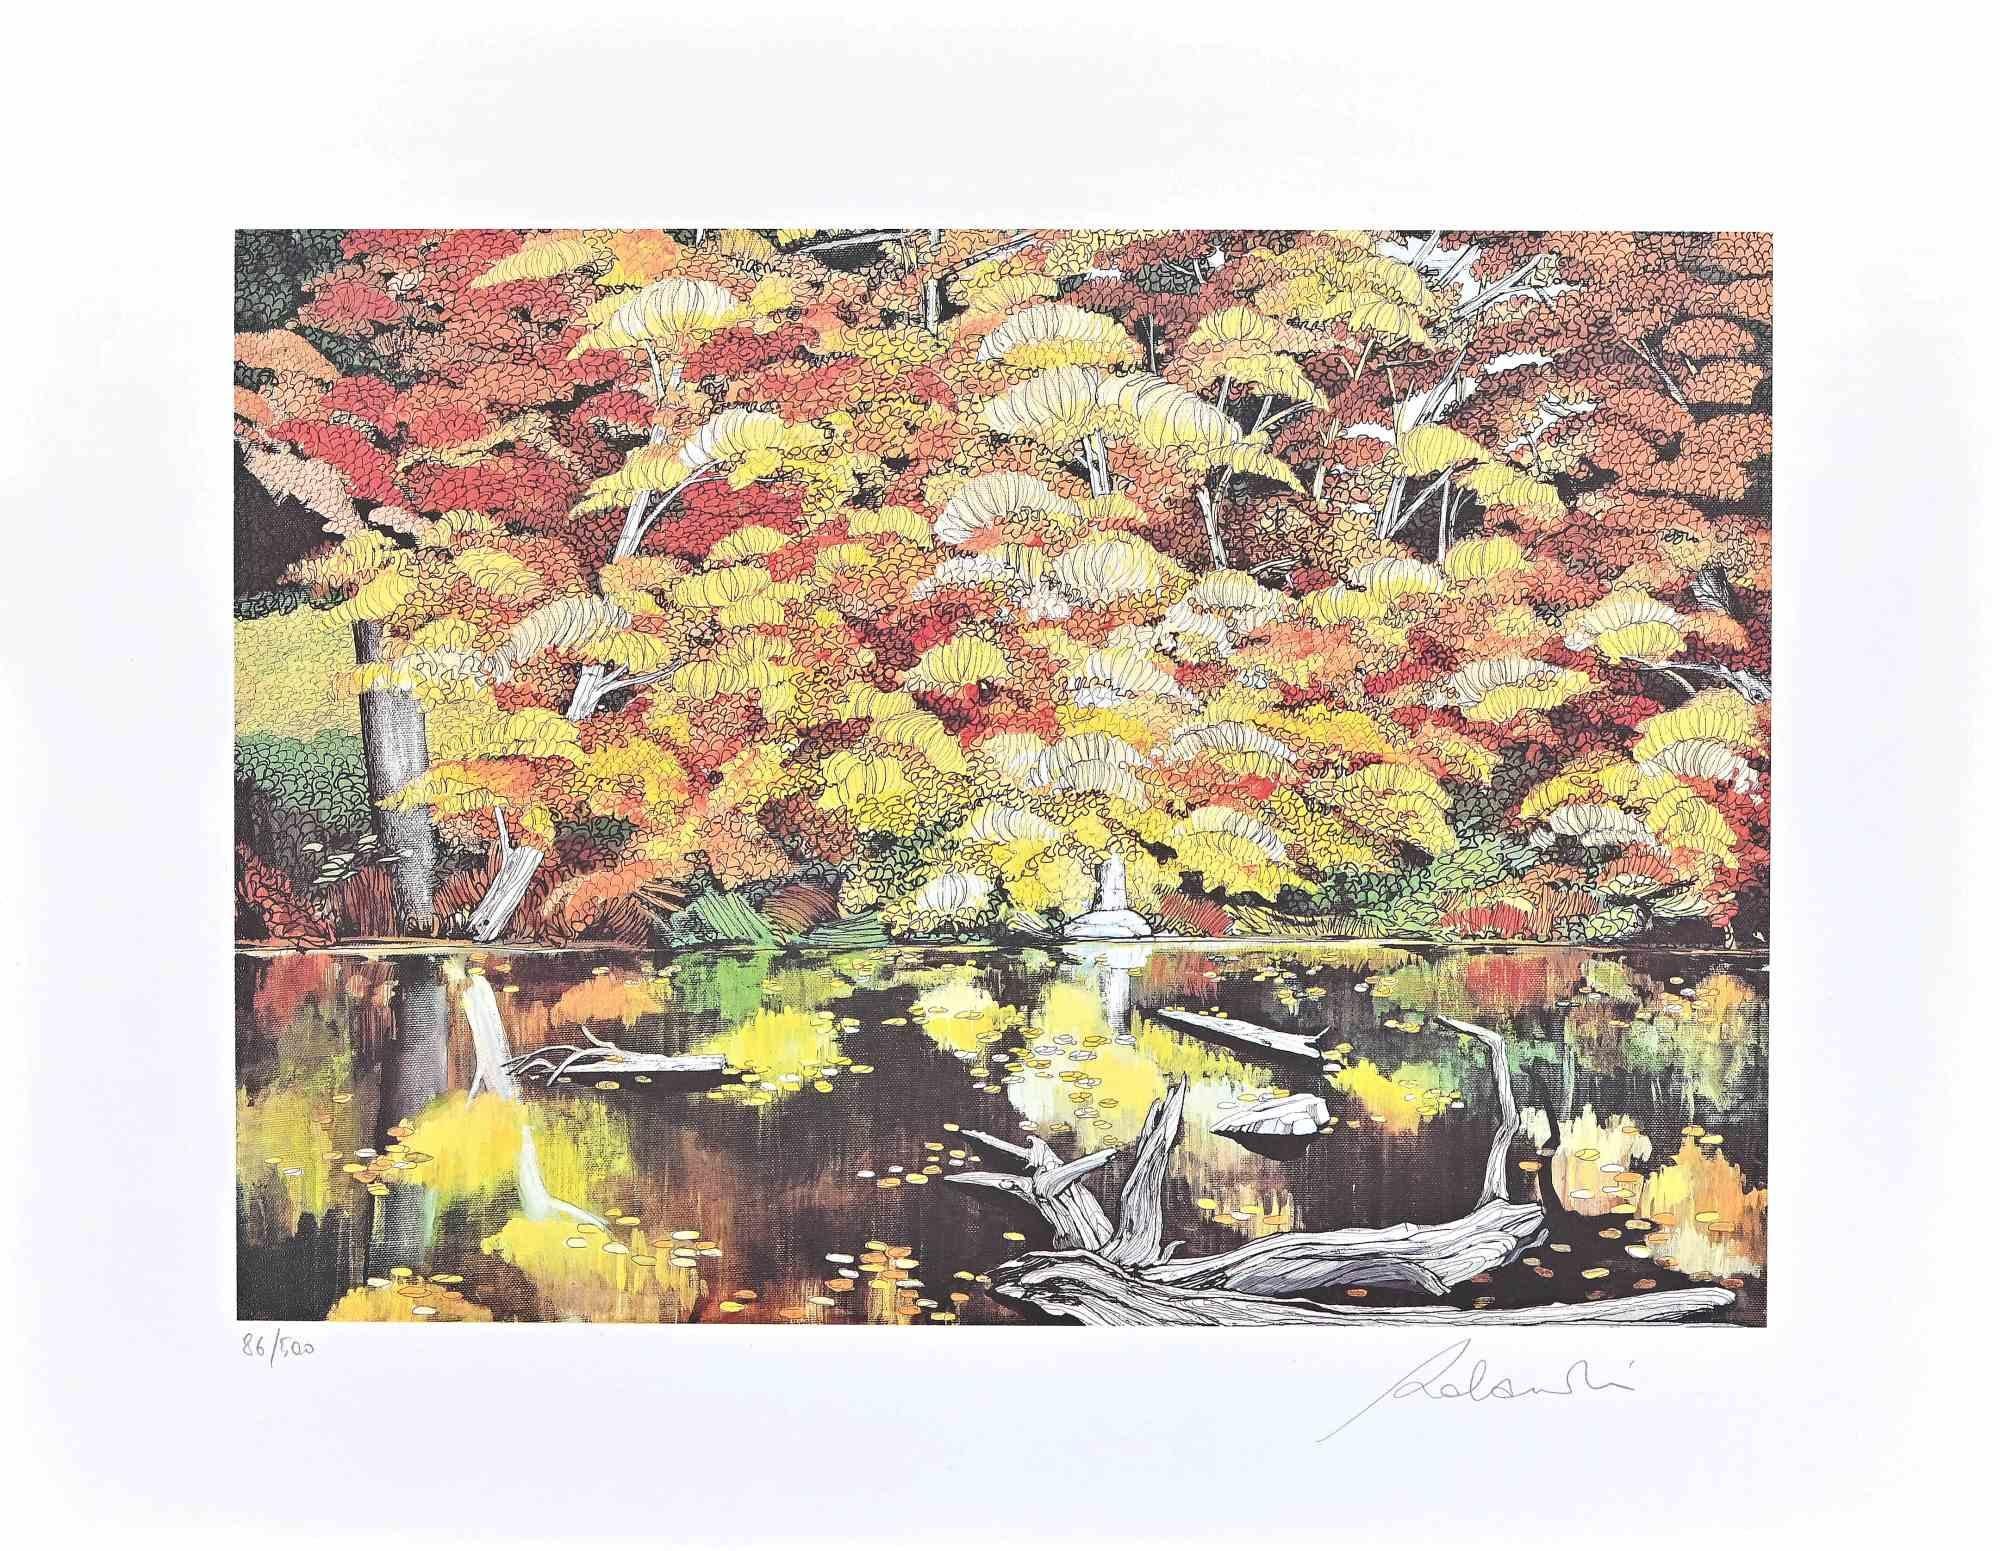 Rolandi (Maurizio Coccia) Landscape Print - Beside The Lake - Screen Print by Rolandi - 1980s